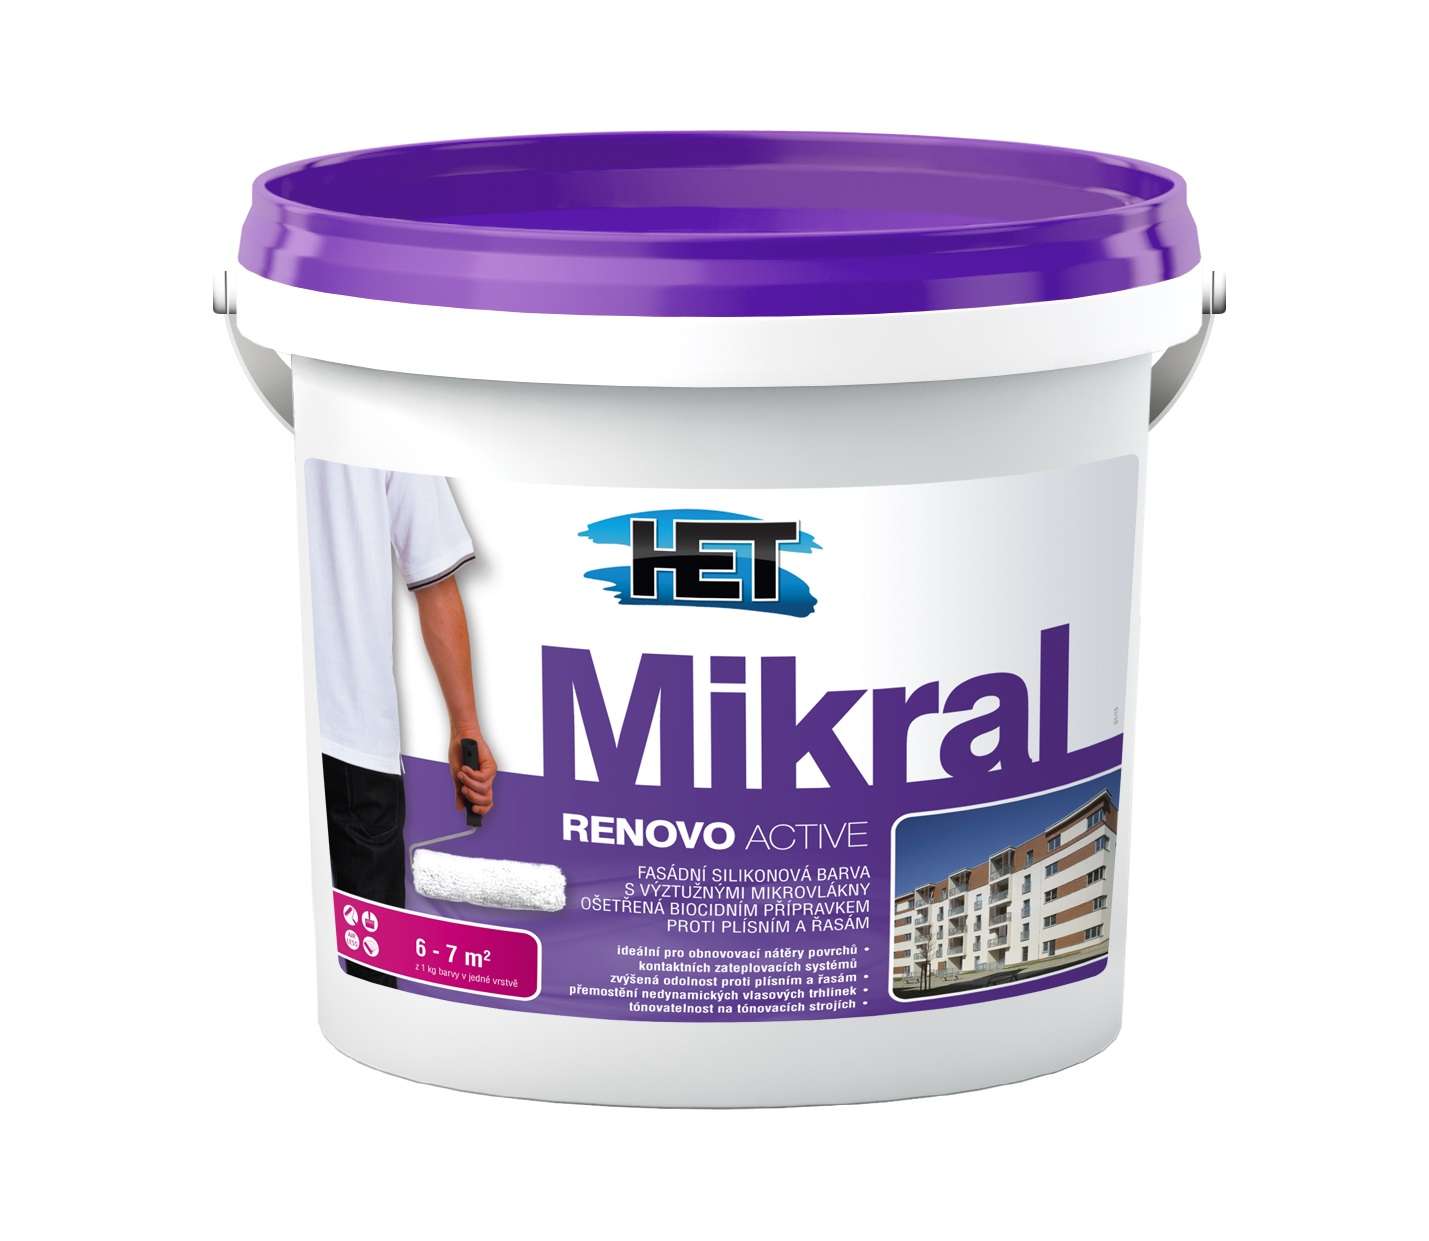 Het Mikral Renovo Active * Fasádní silikonová barva s výstužnými mikrovlákny ošetřená biocidním přípravkem. 1